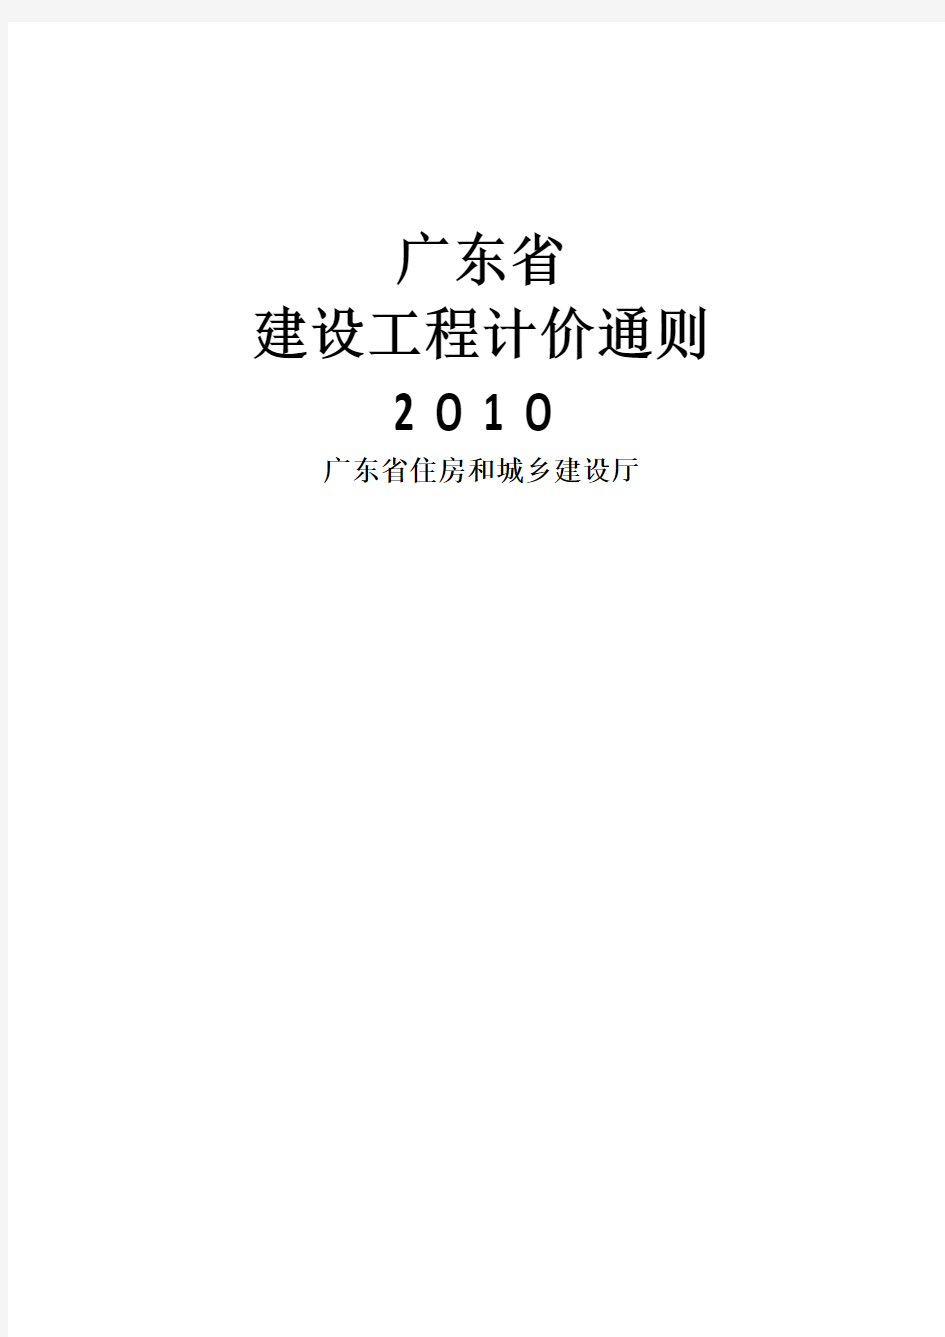 2010年广东省建筑工程计价通则(完整版)